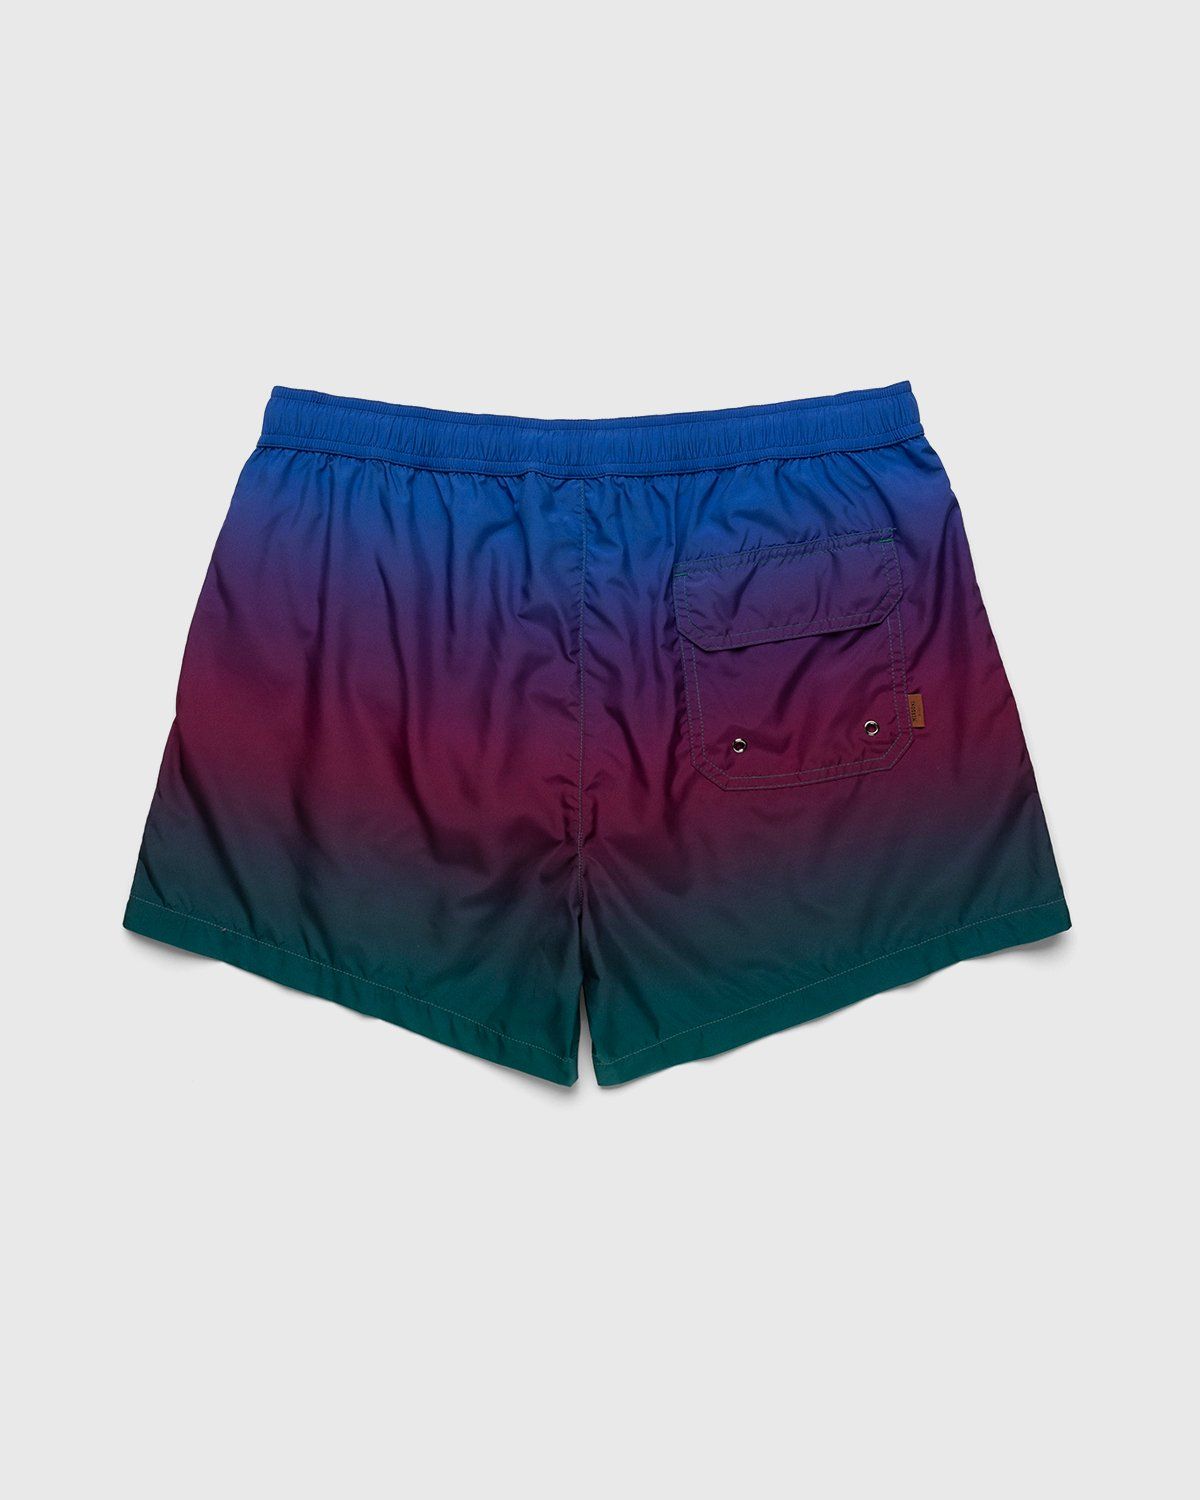 Missoni – Degrade Print Swim Shorts Blue - Swim Shorts - Blue - Image 2